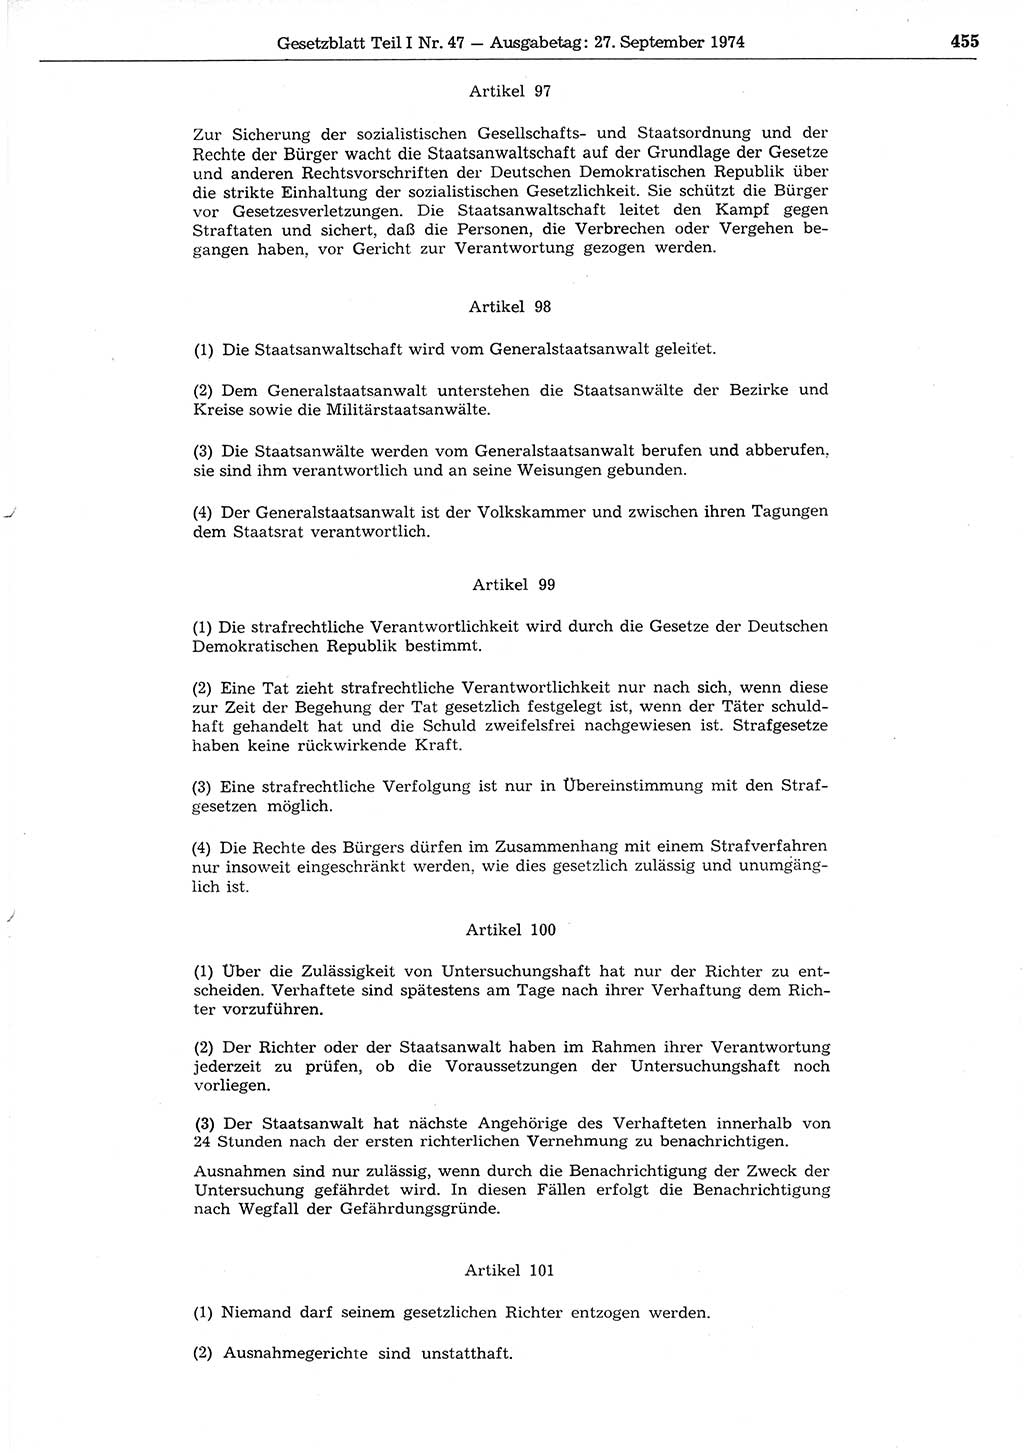 Gesetzblatt (GBl.) der Deutschen Demokratischen Republik (DDR) Teil Ⅰ 1974, Seite 455 (GBl. DDR Ⅰ 1974, S. 455)